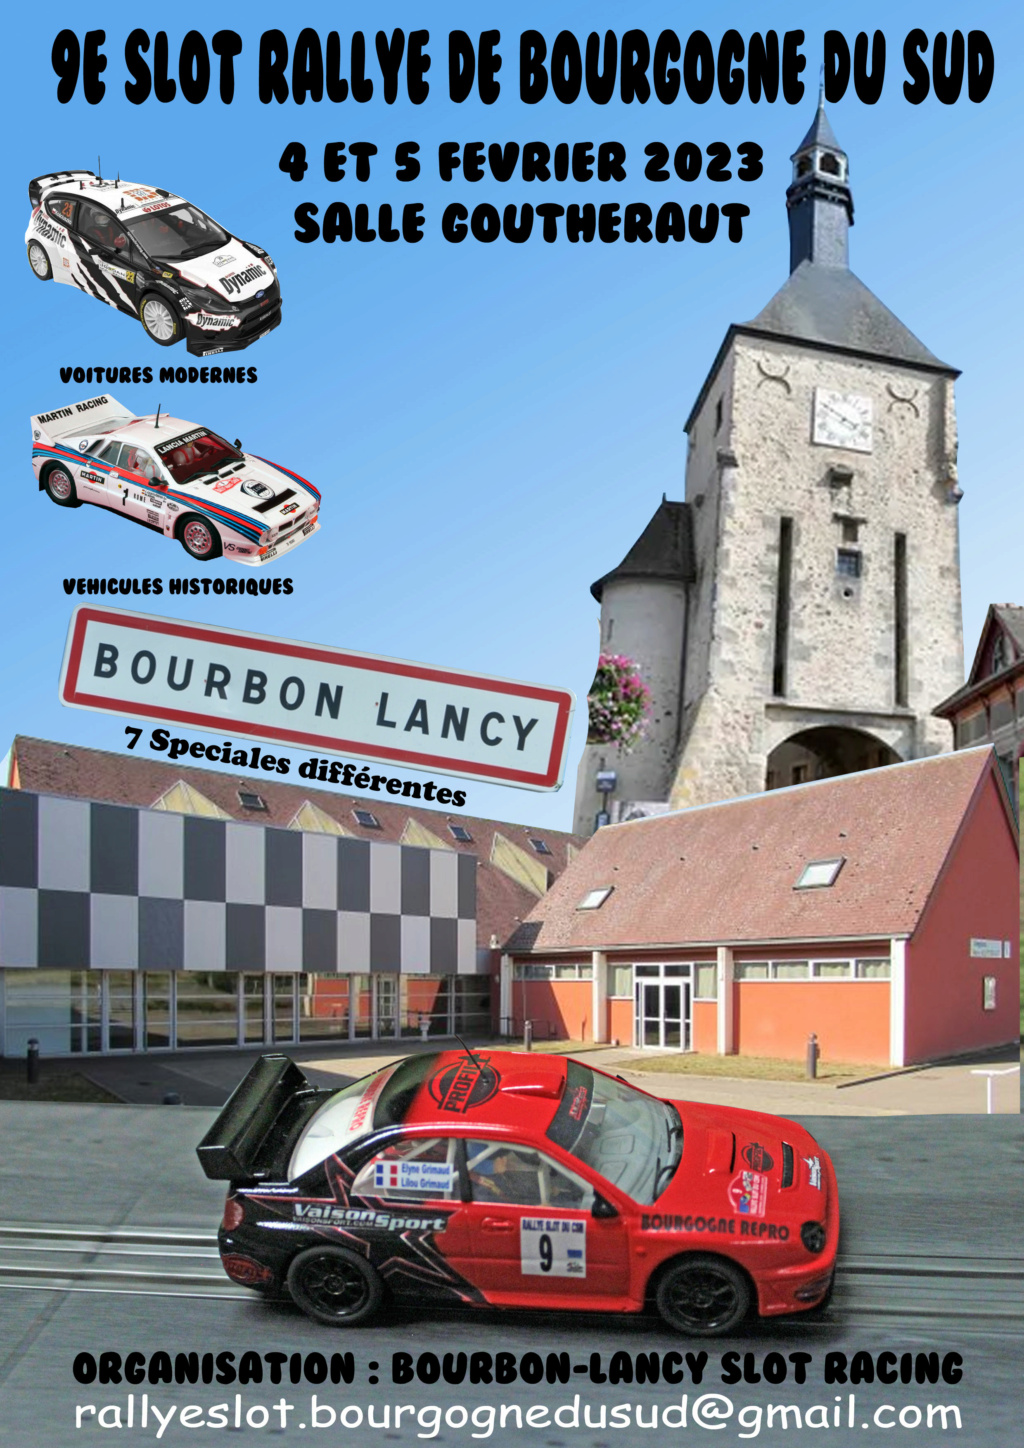 9e Slot Rallye de Bourgogne du Sud.. pour Février 2023 ! dans Animations SLOT affich13